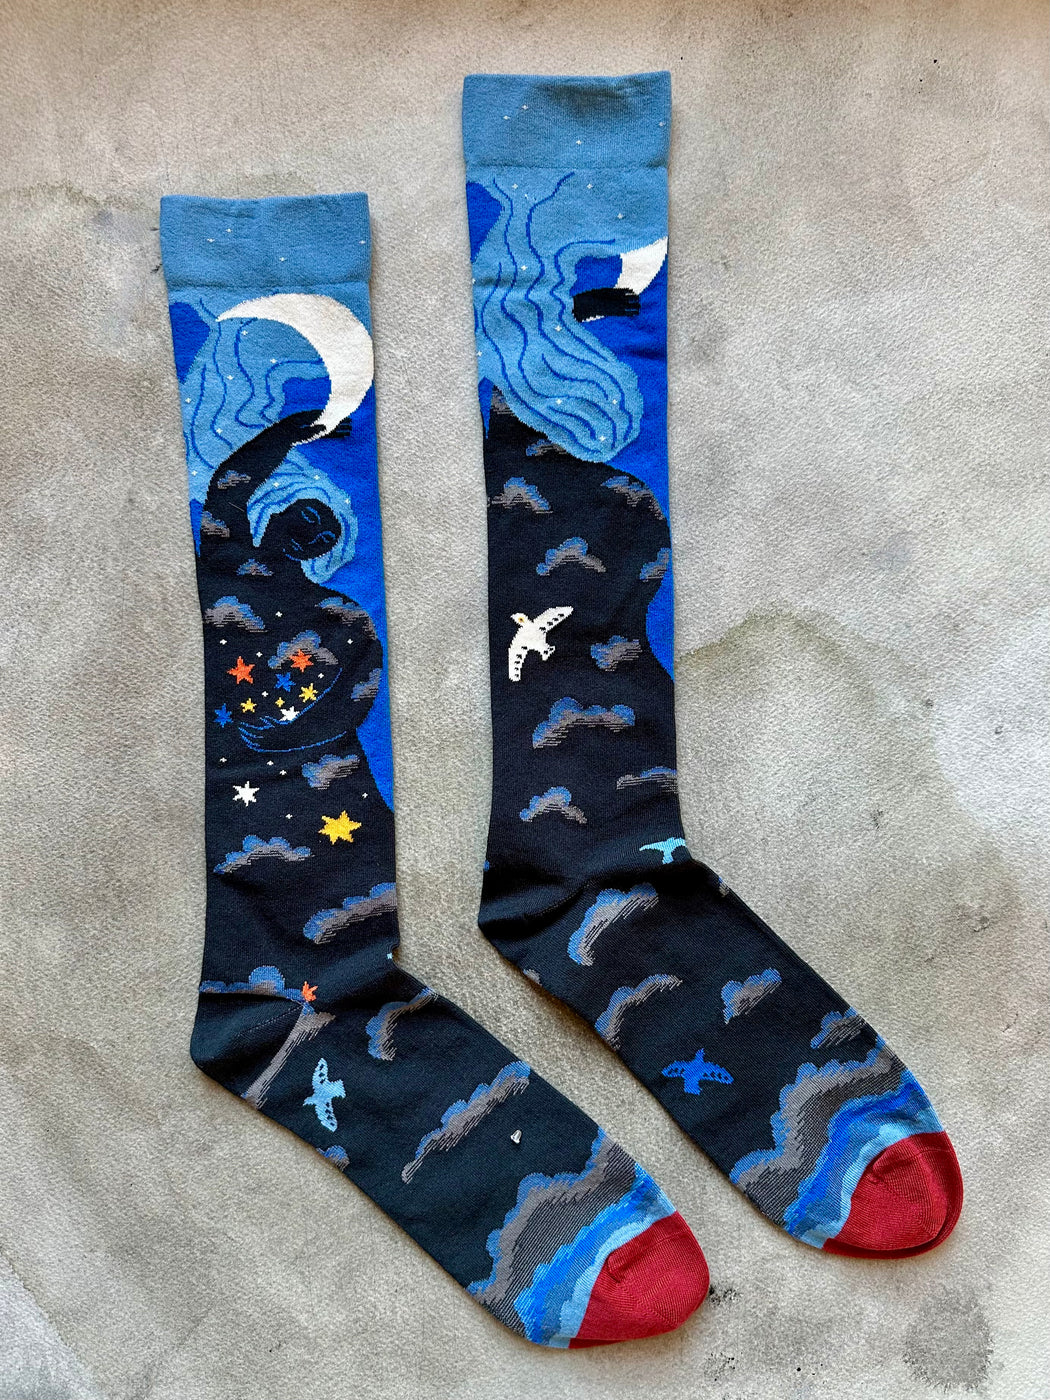 "Night Sky" Socks by Bonne Maison